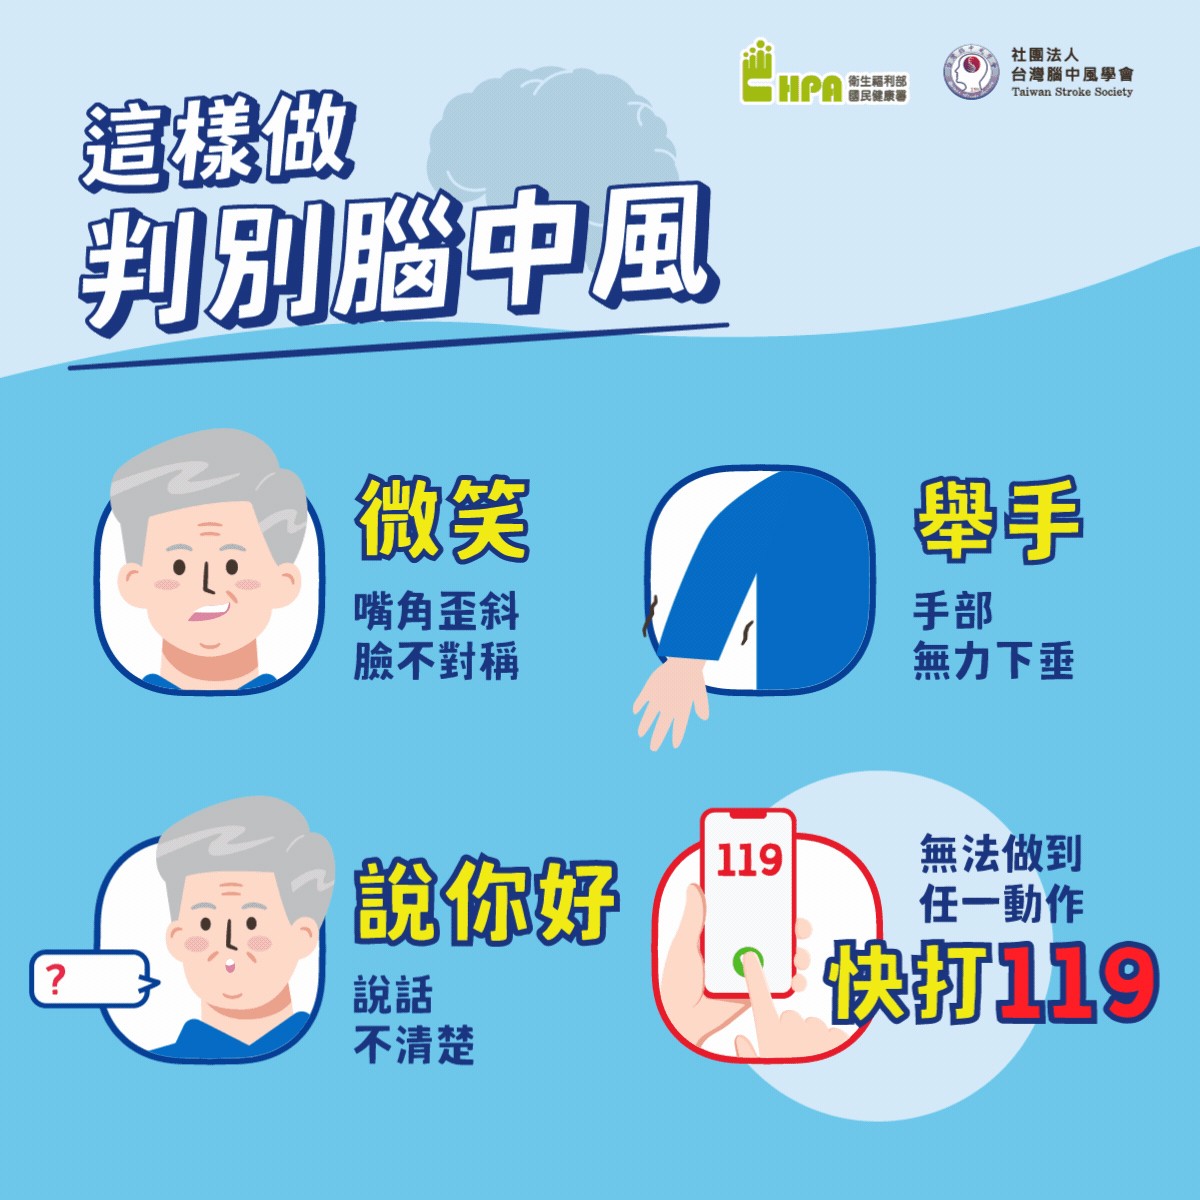 腦中風8大危險因子 控制三高遵守4要點 台灣每42分鐘即有1人死於腦血管疾病